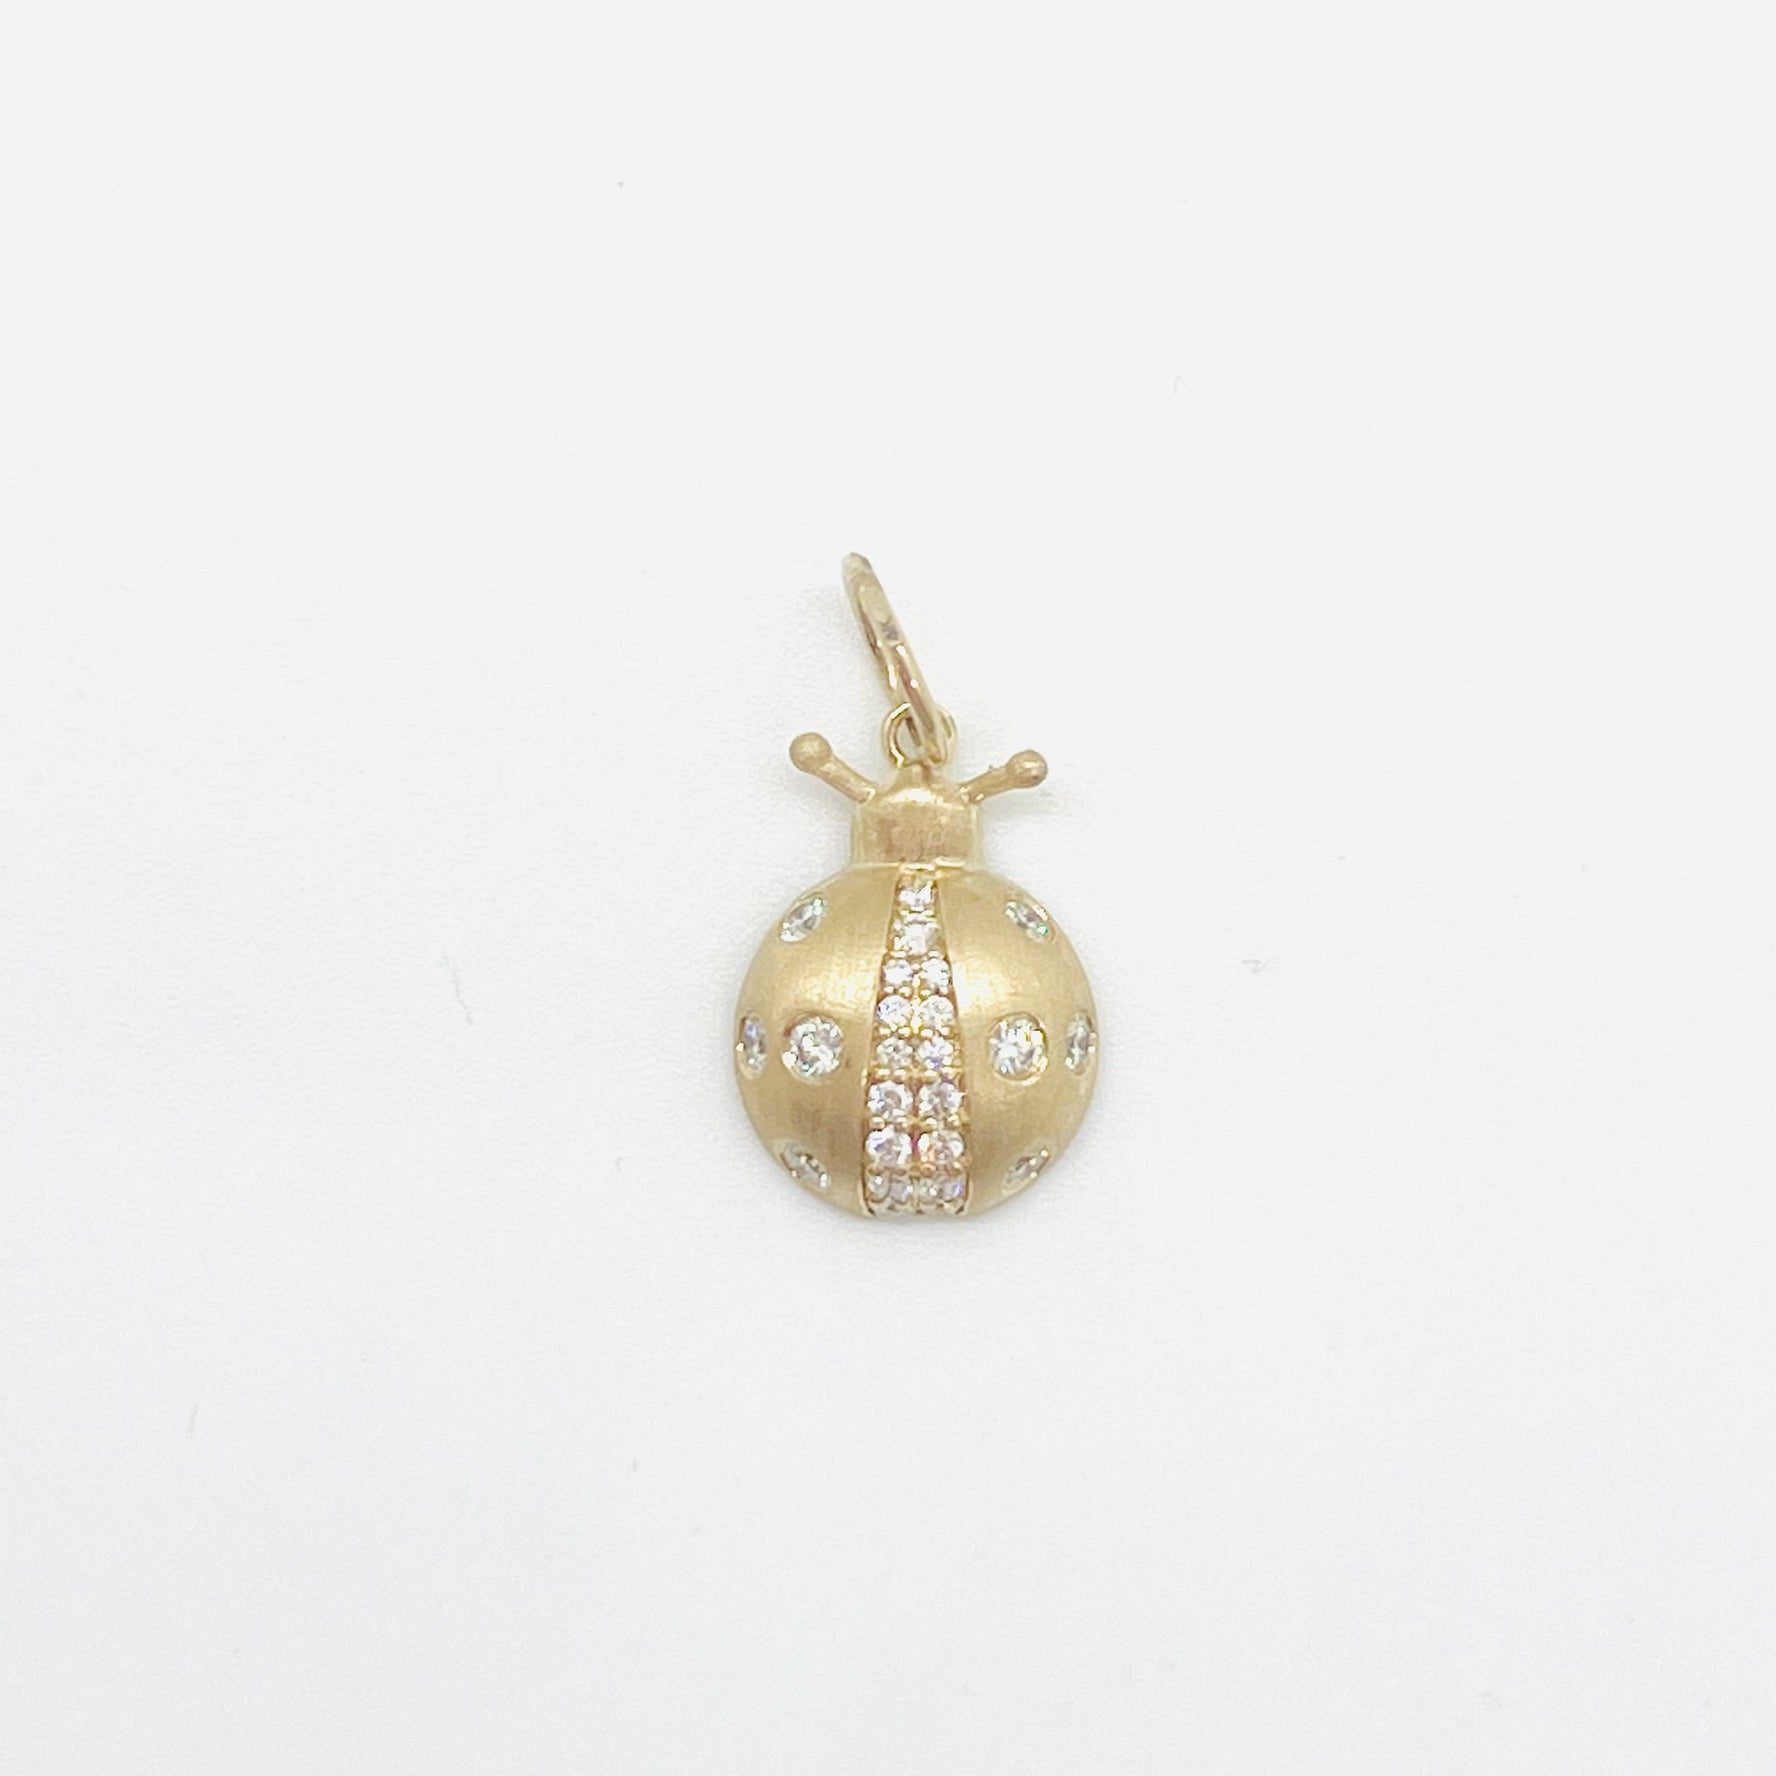 14k gold and diamond ladybug charm